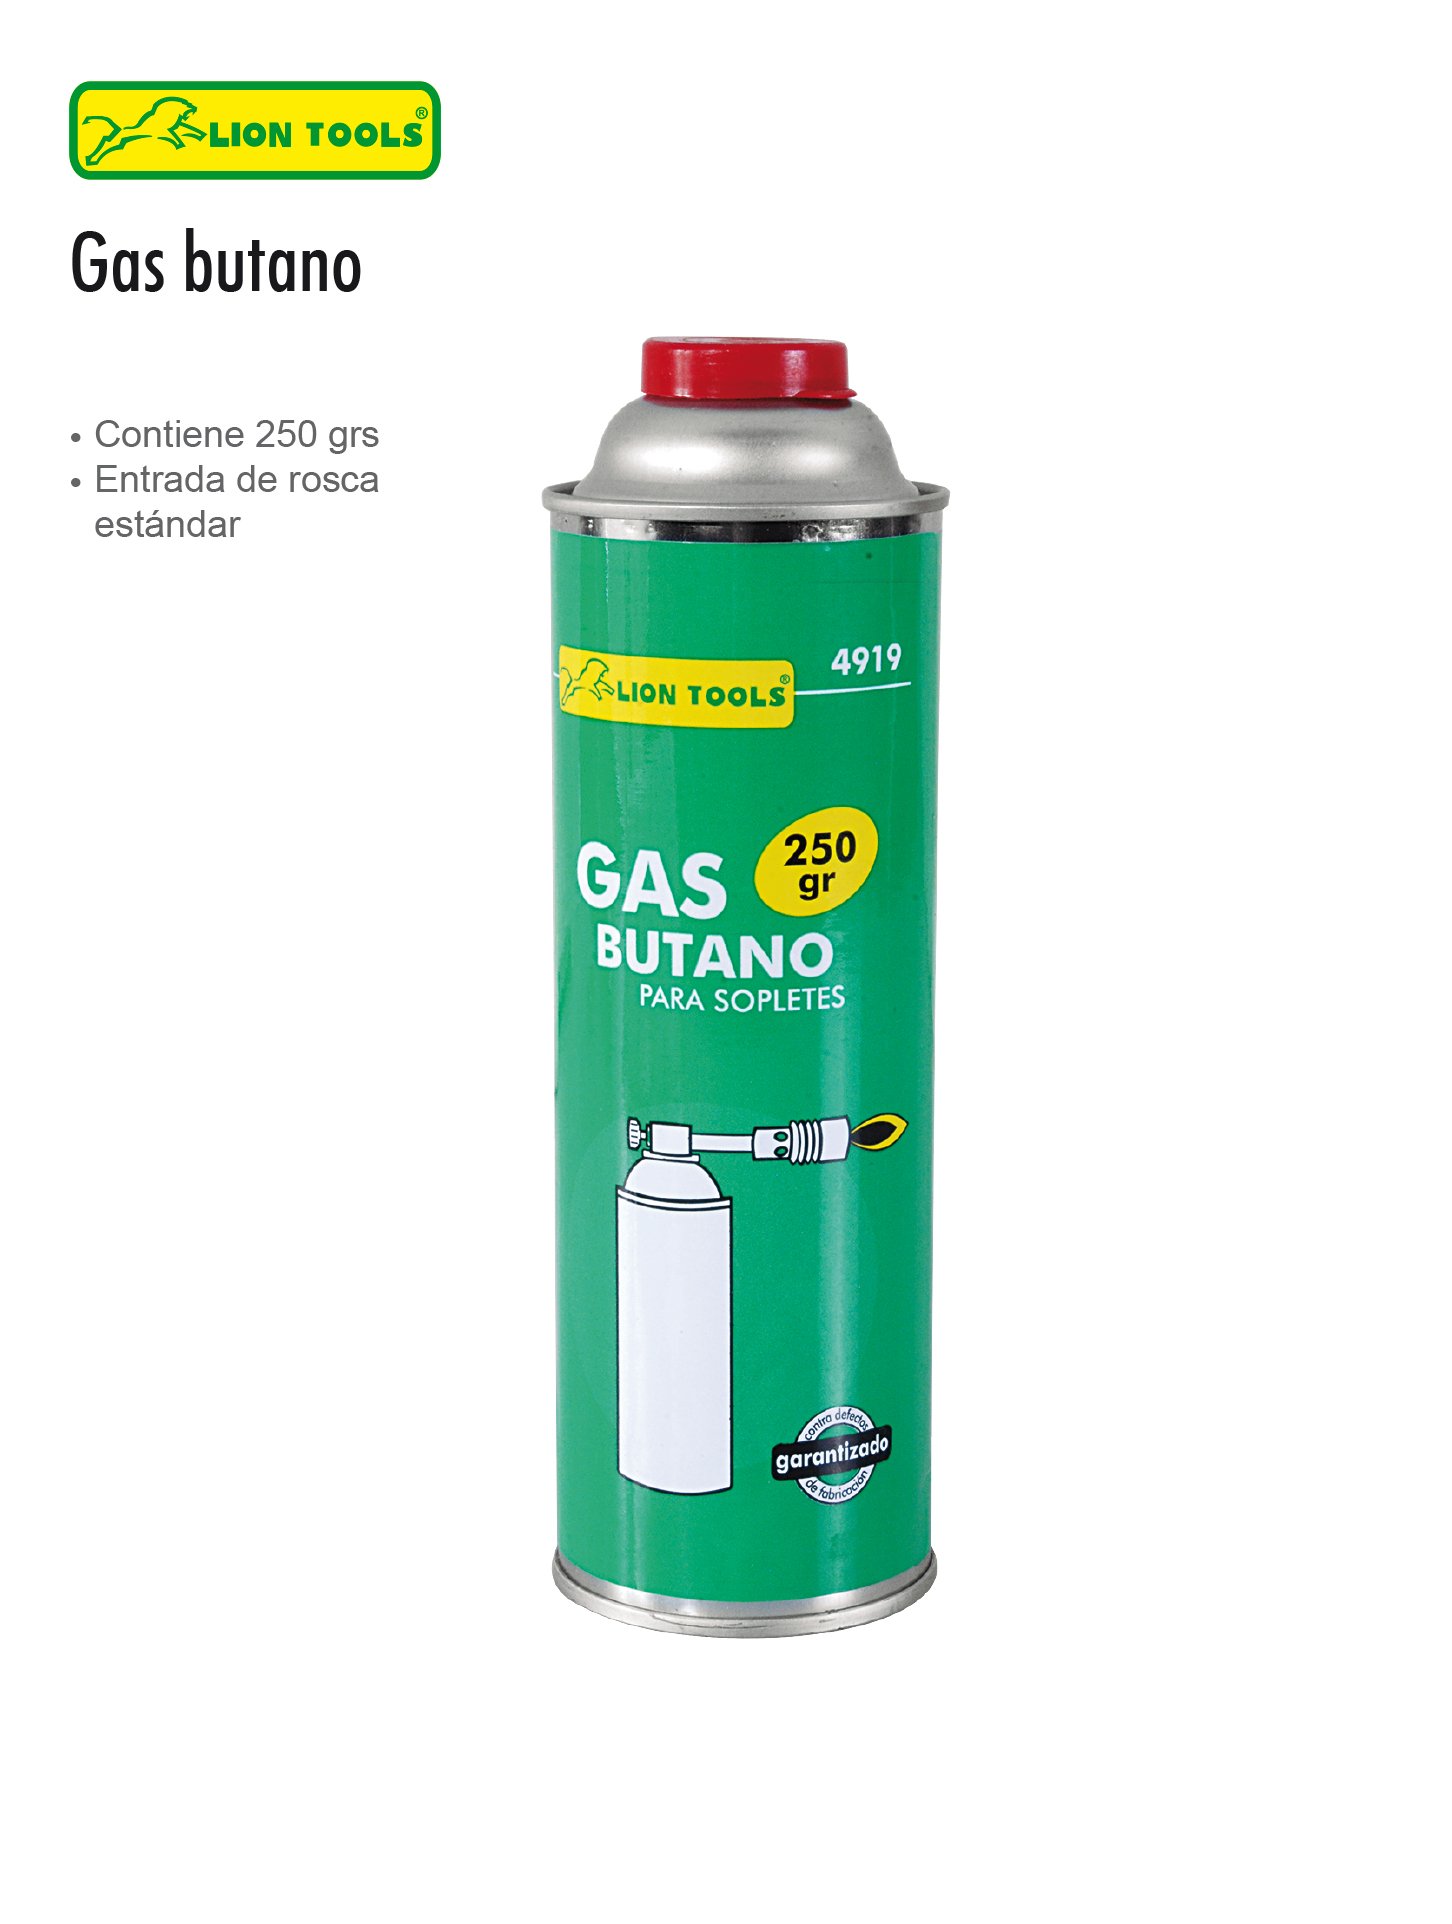 SOPLETE DE GAS BUTANO – PLUSTOOLS